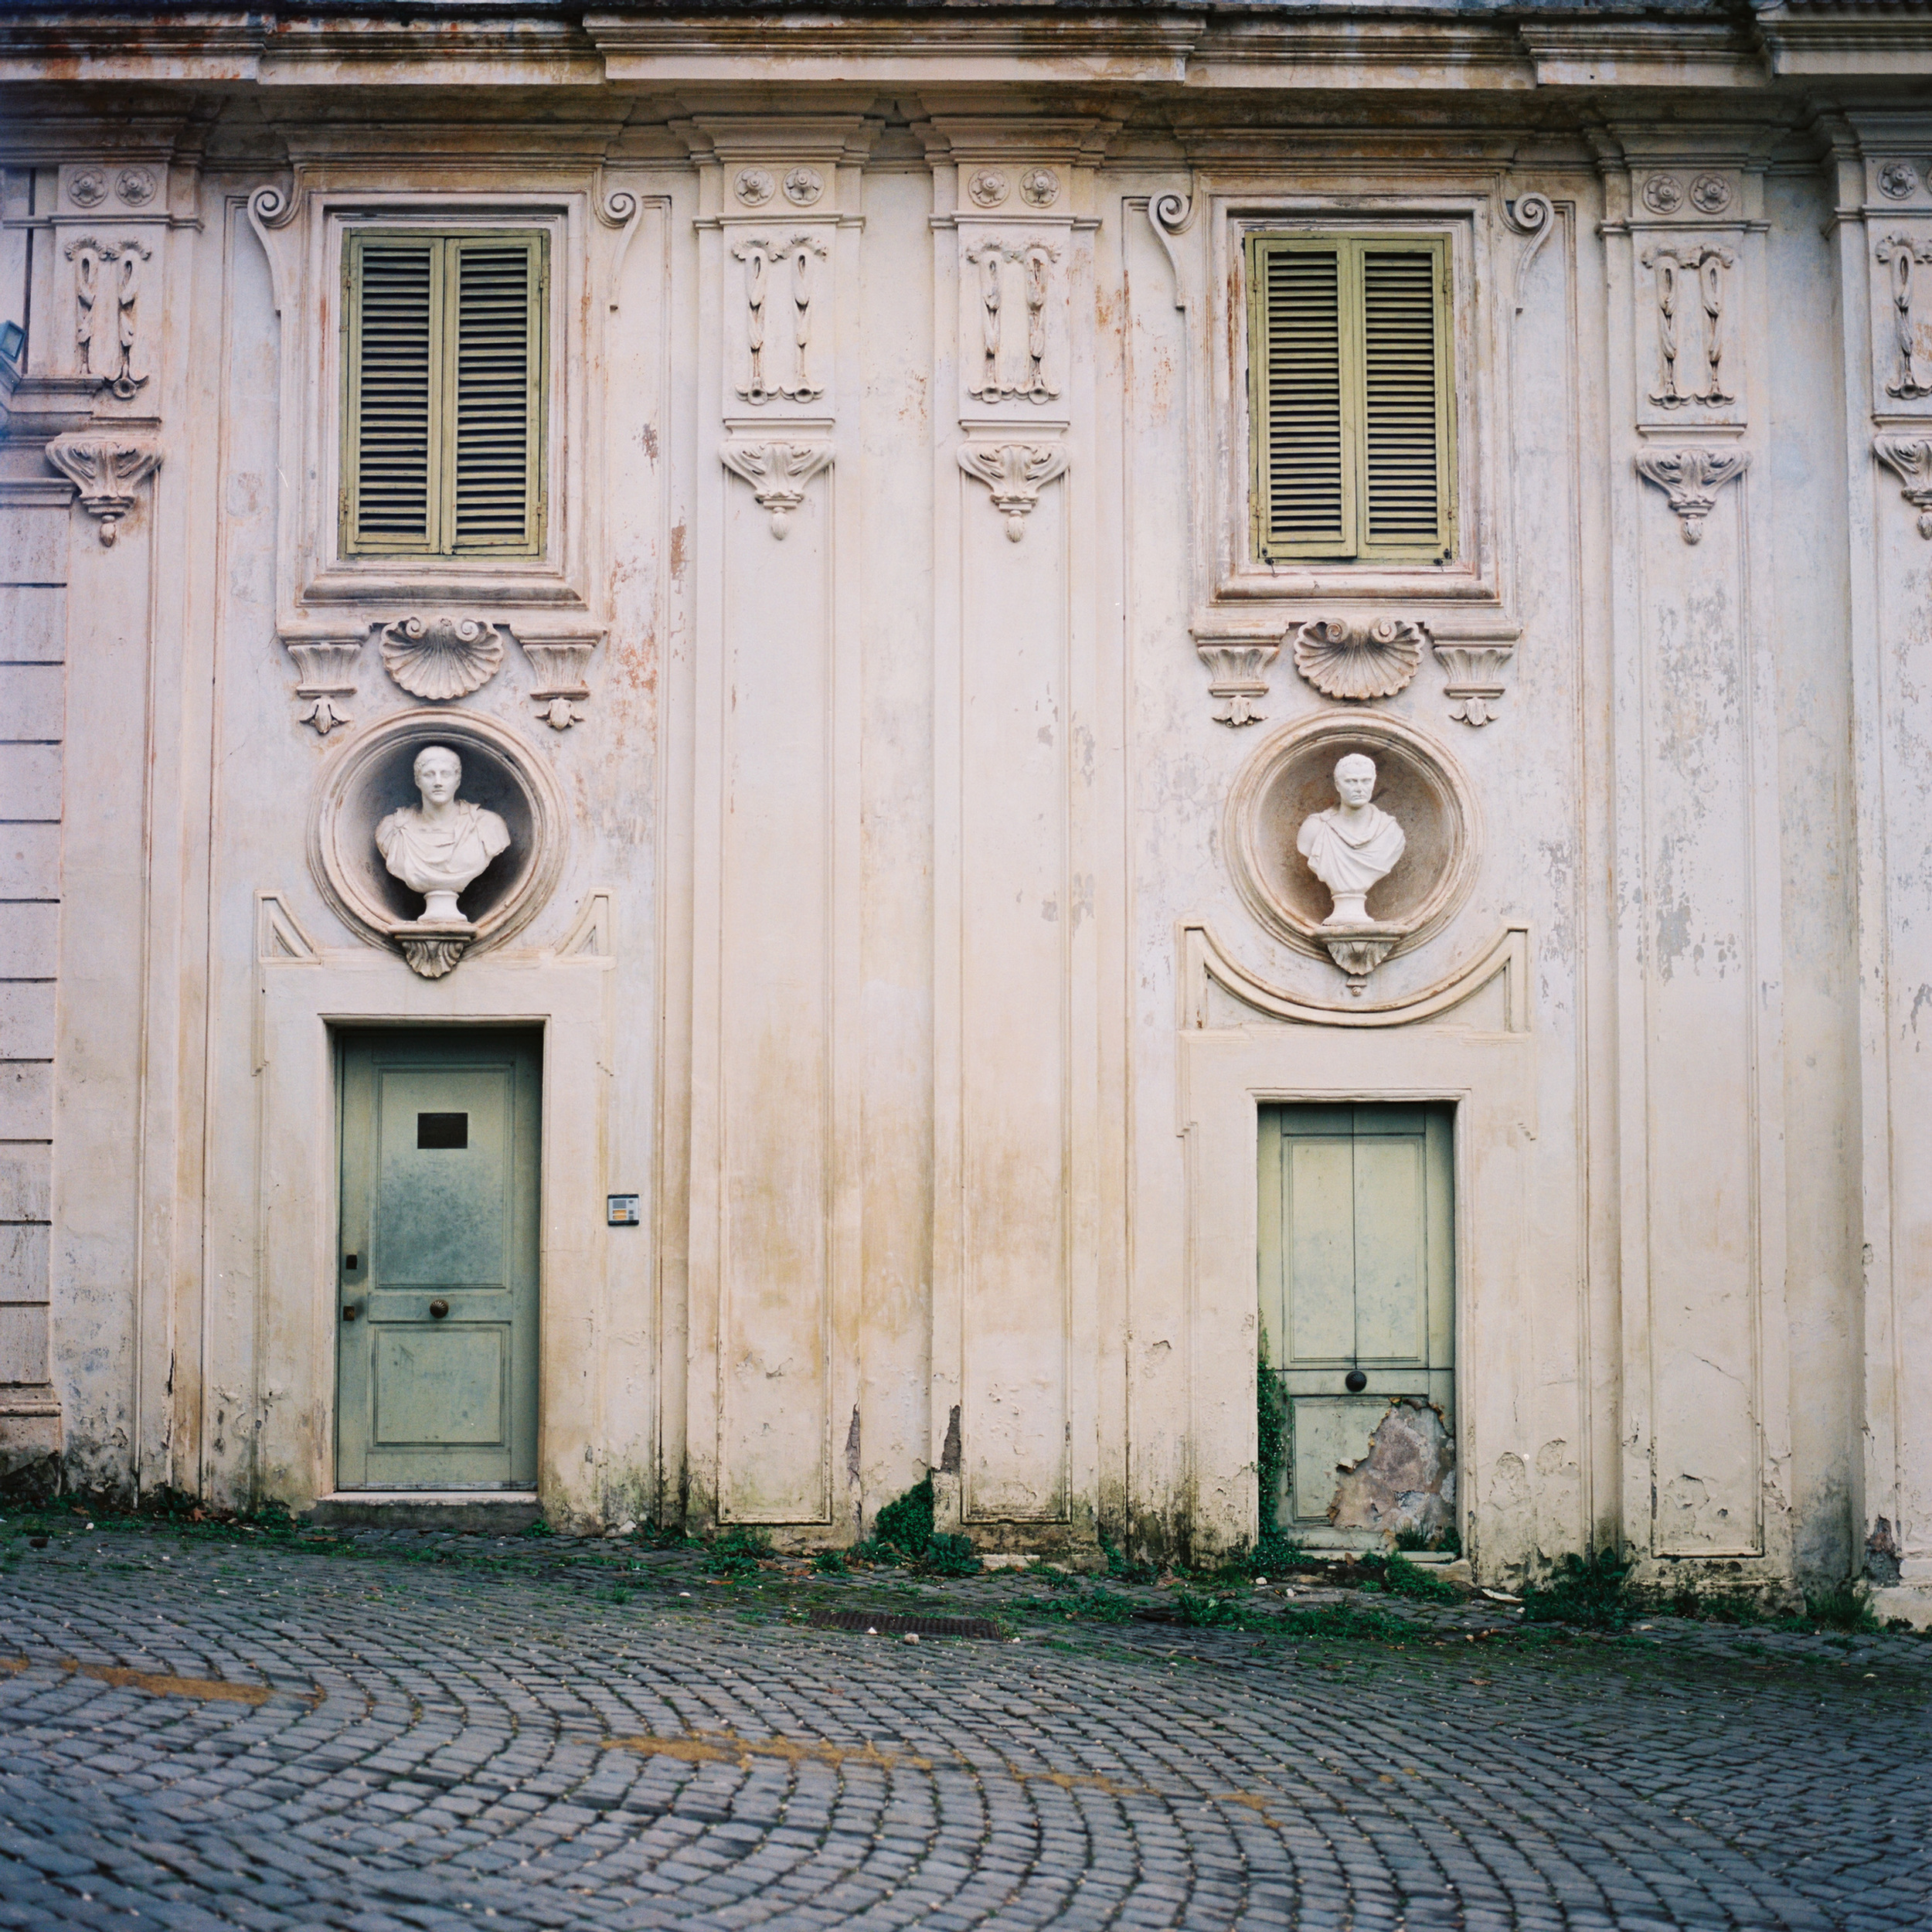  Villa Medici,  Rome, 2015 